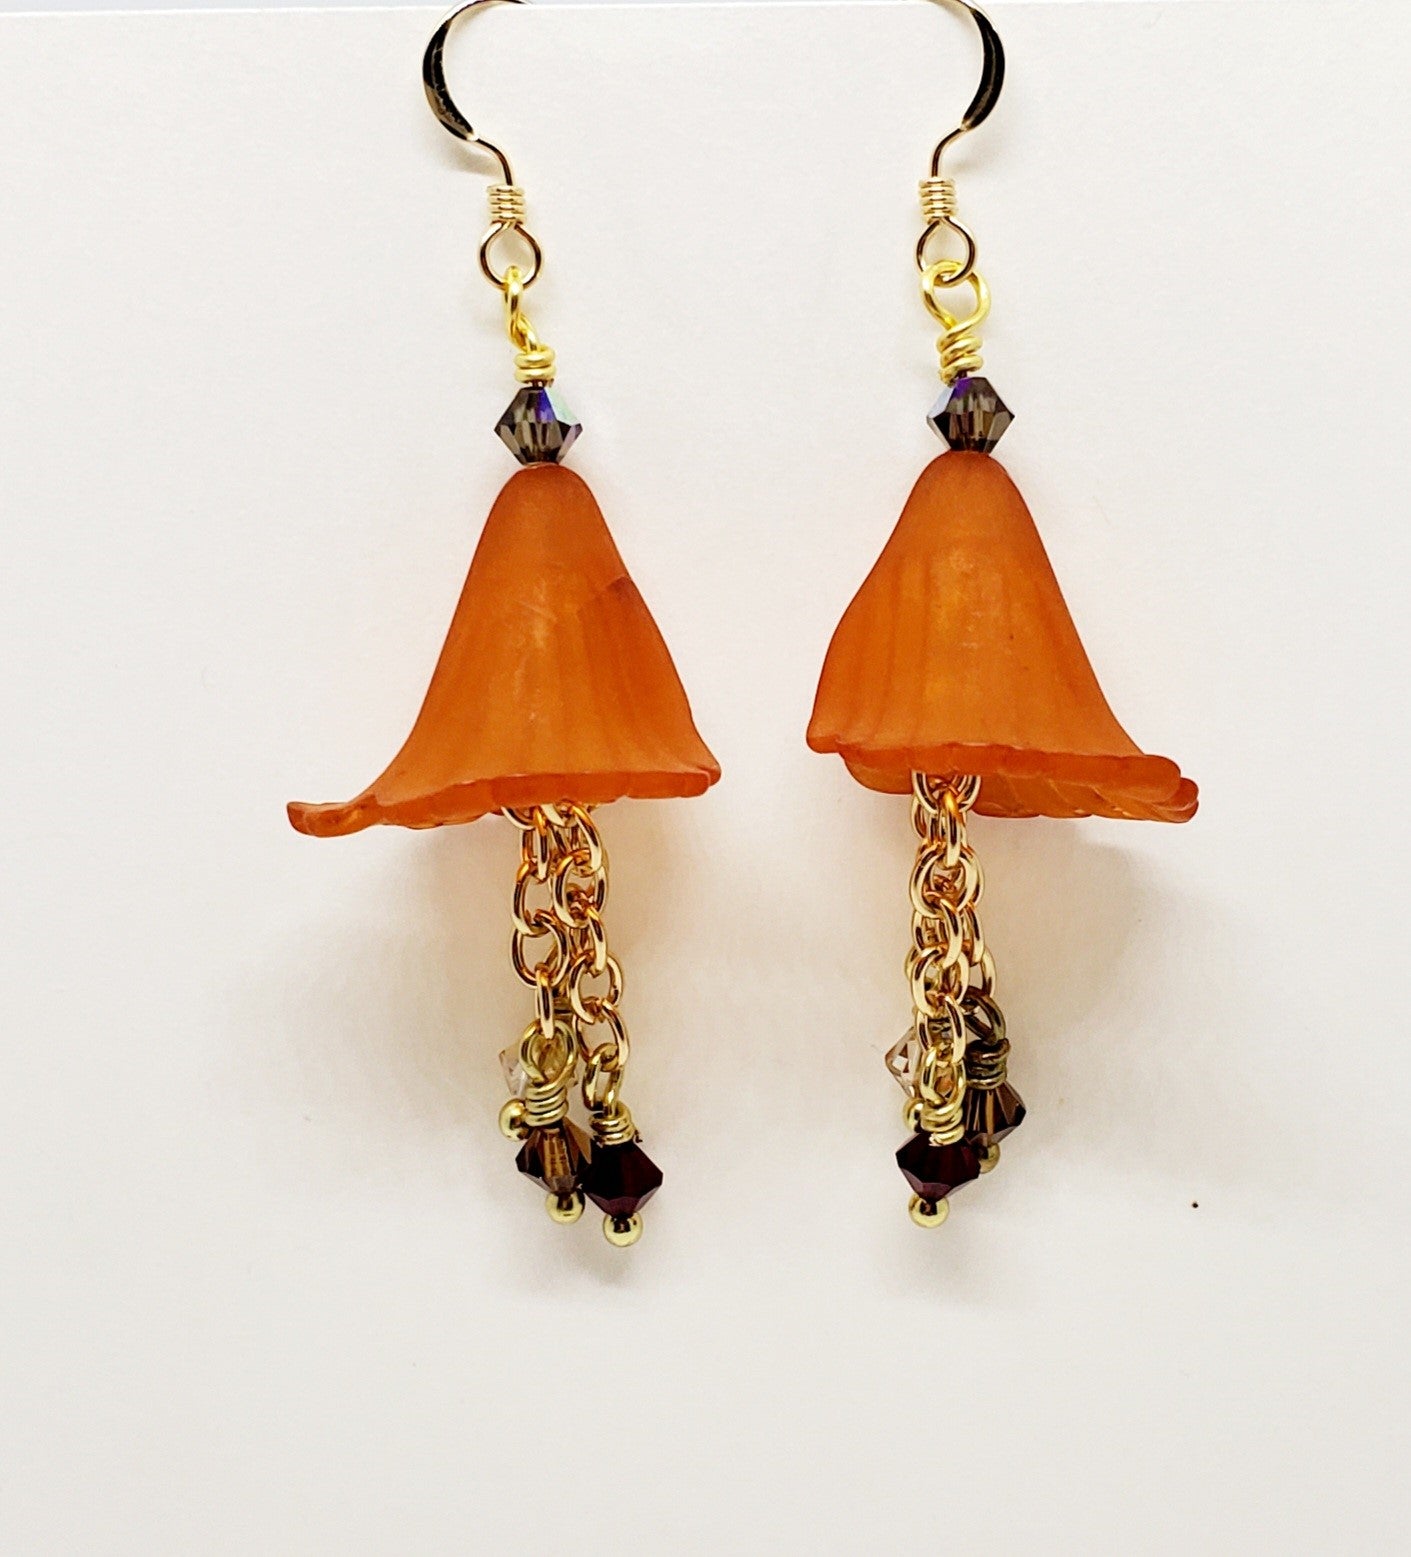 Pumpkin Flower Earrings, Vintage Lucite, Crystal dangles, 14ktGF ear wires